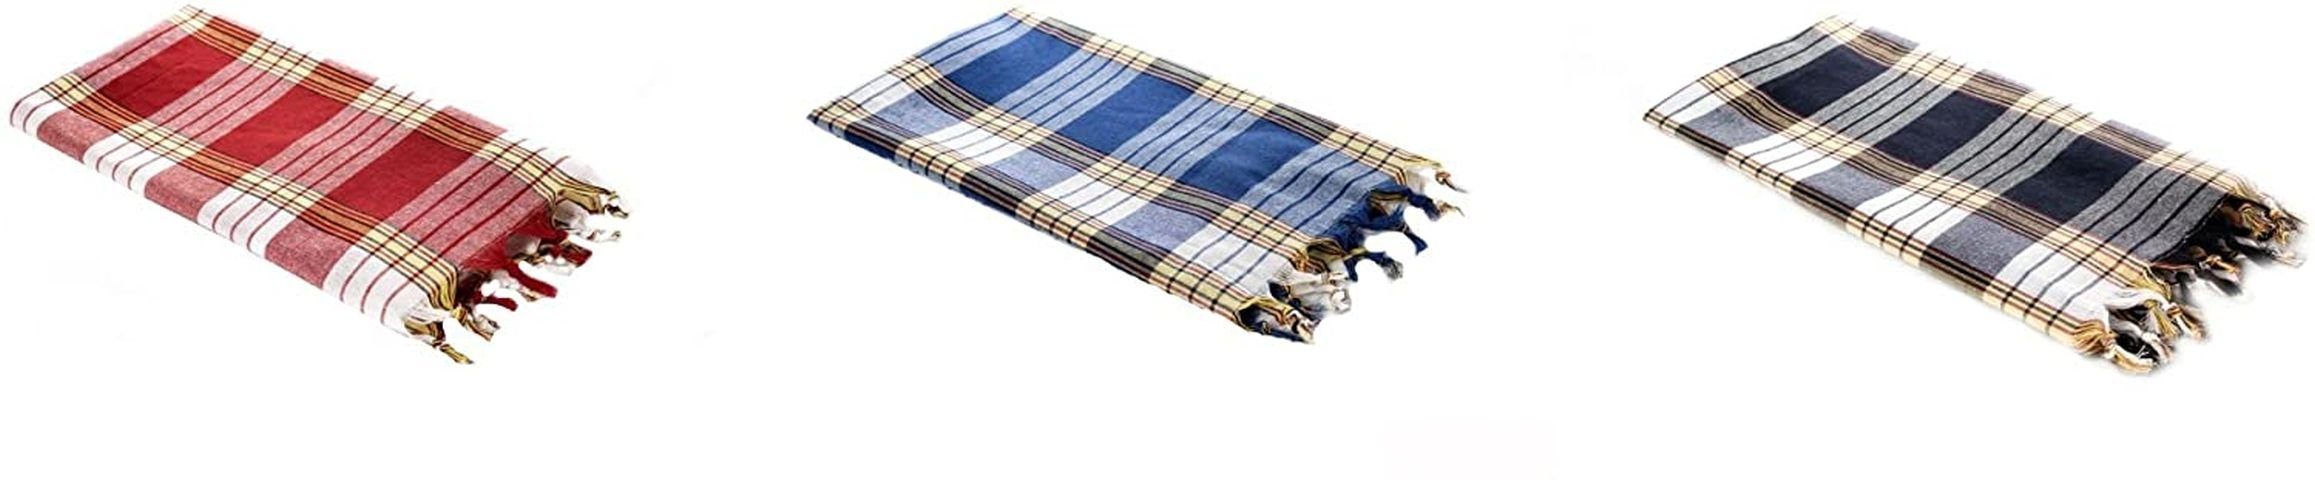 Outdoor Saunahandtuch Pestemal, cm schnelltrocknendes Handtuch blau, 3x Baumwolle, saugfähiges Hamamtücher Carenesse Classic, schwarz rot, towel beachtowel 80x170